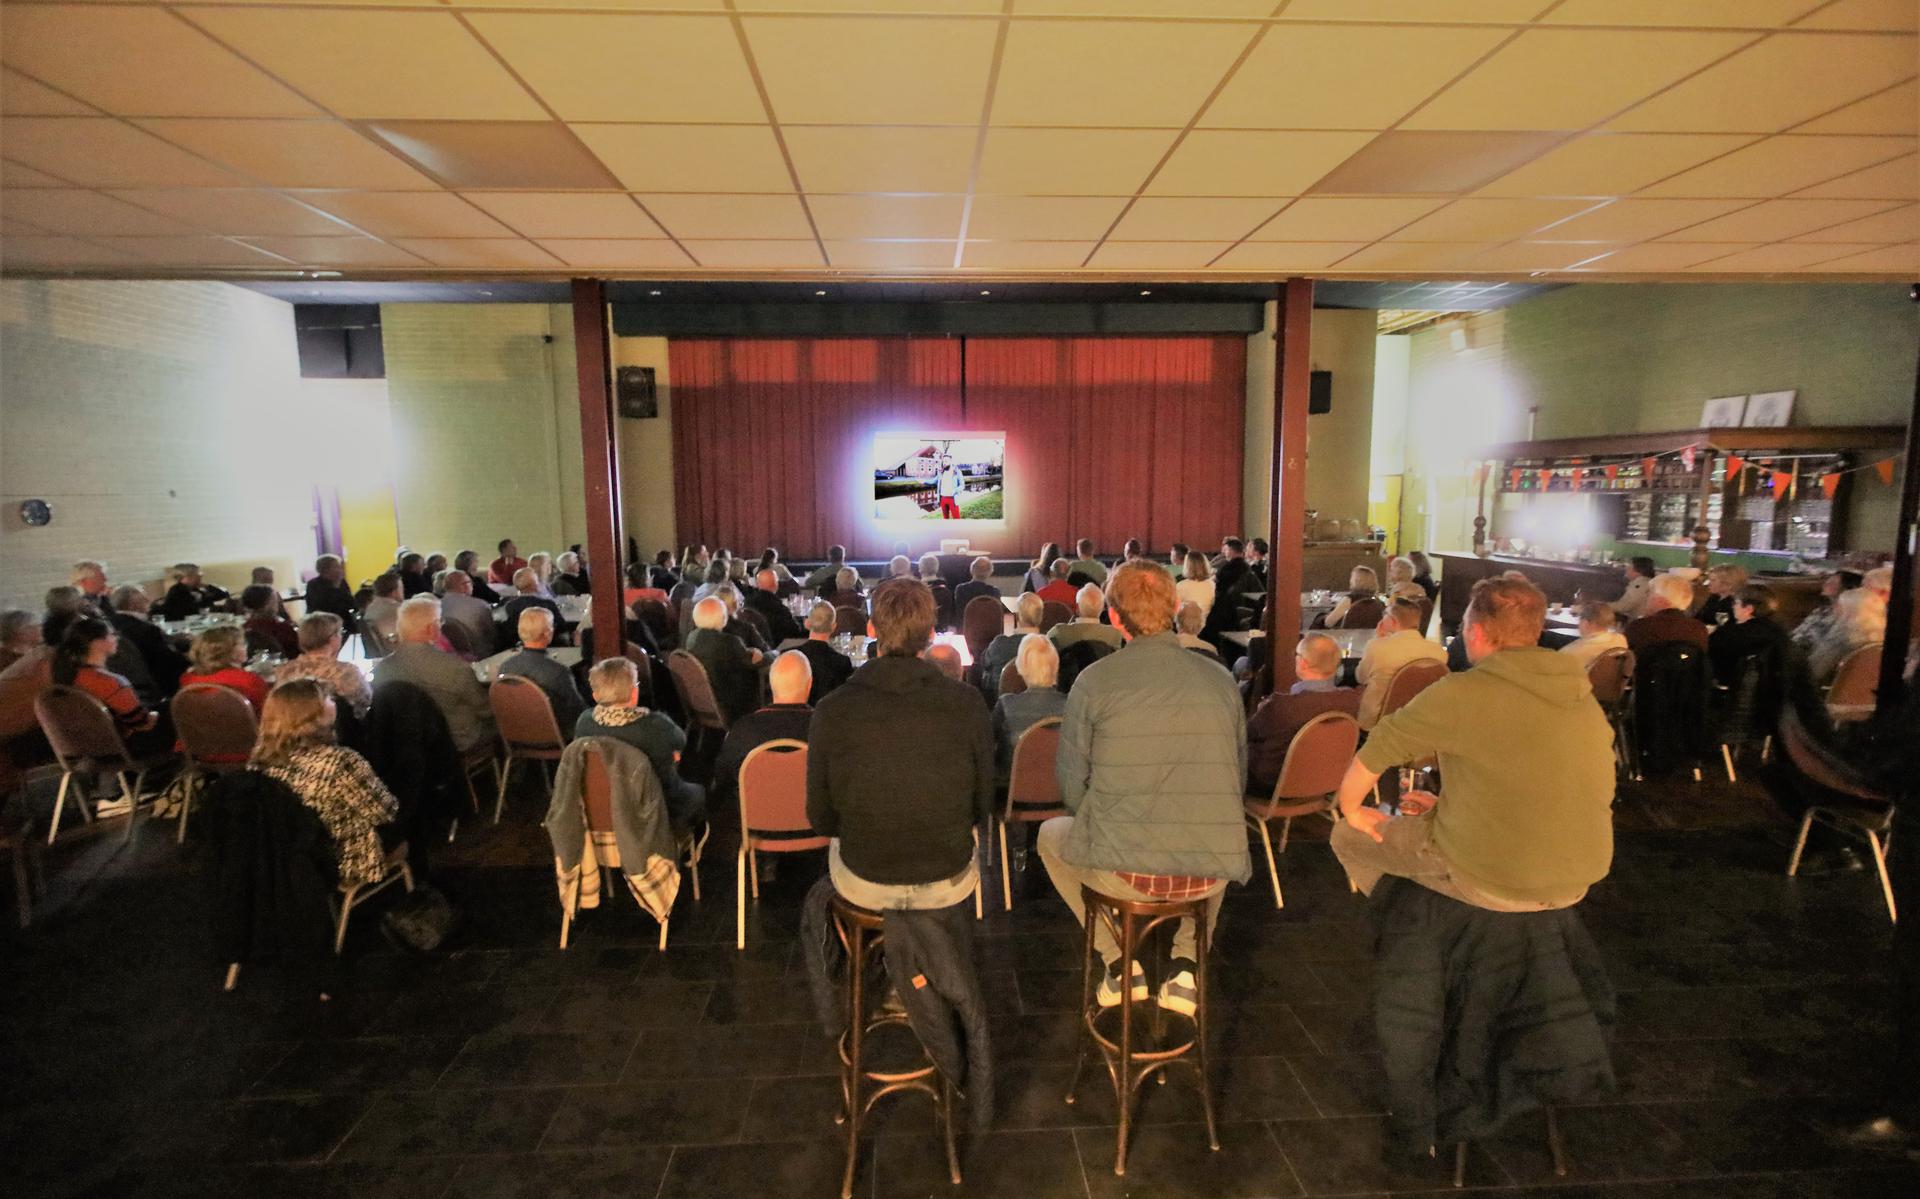 De bijeenkomst in De Kiepe werd door meer dan 100 belangstellenden bezocht.